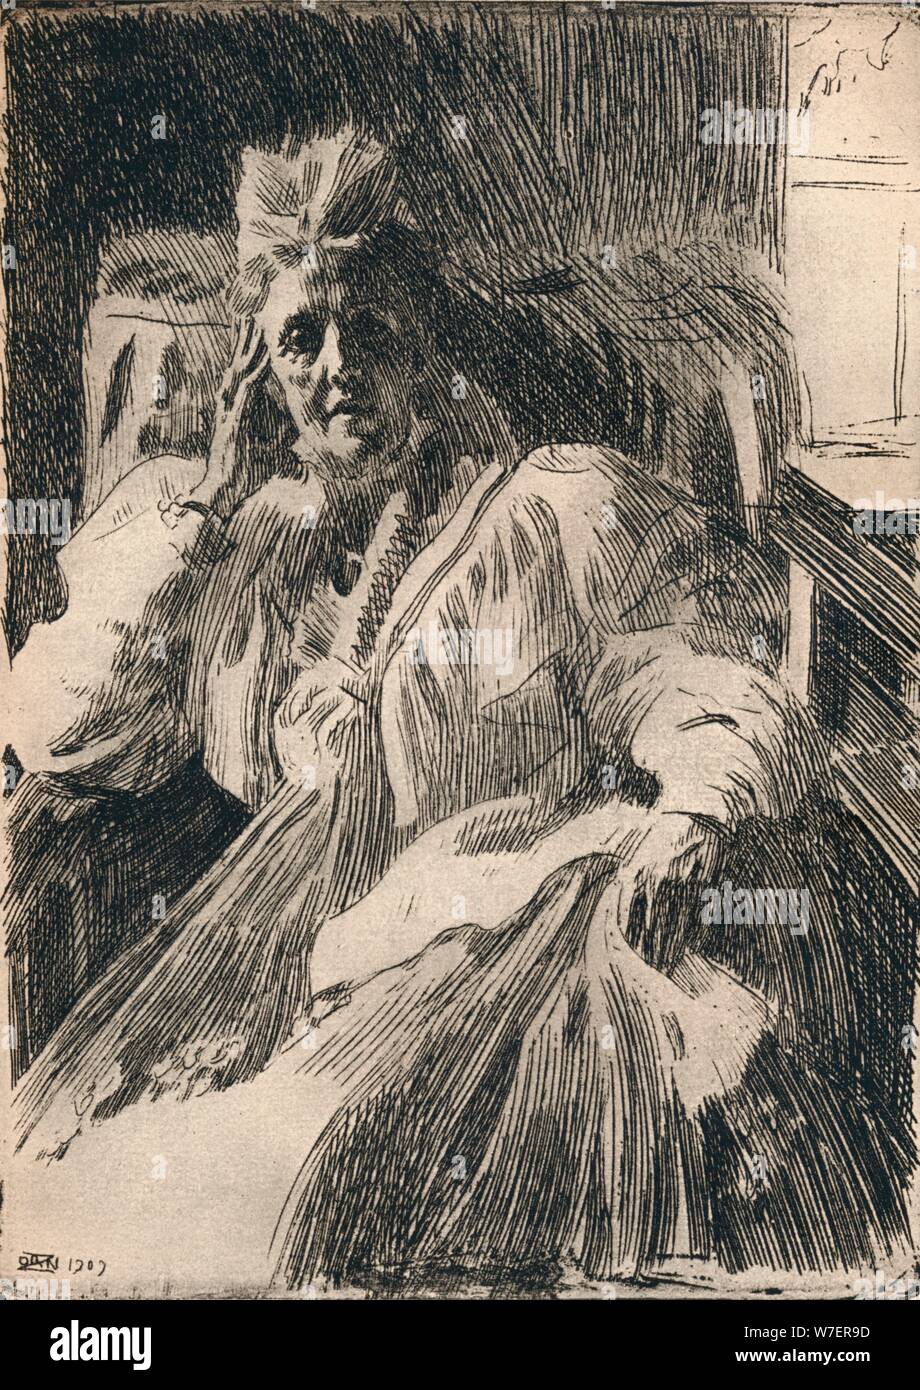 Une gravure du Dowagger reine de Suède, c1909. Artiste : Anders Leonard Zorn. Banque D'Images